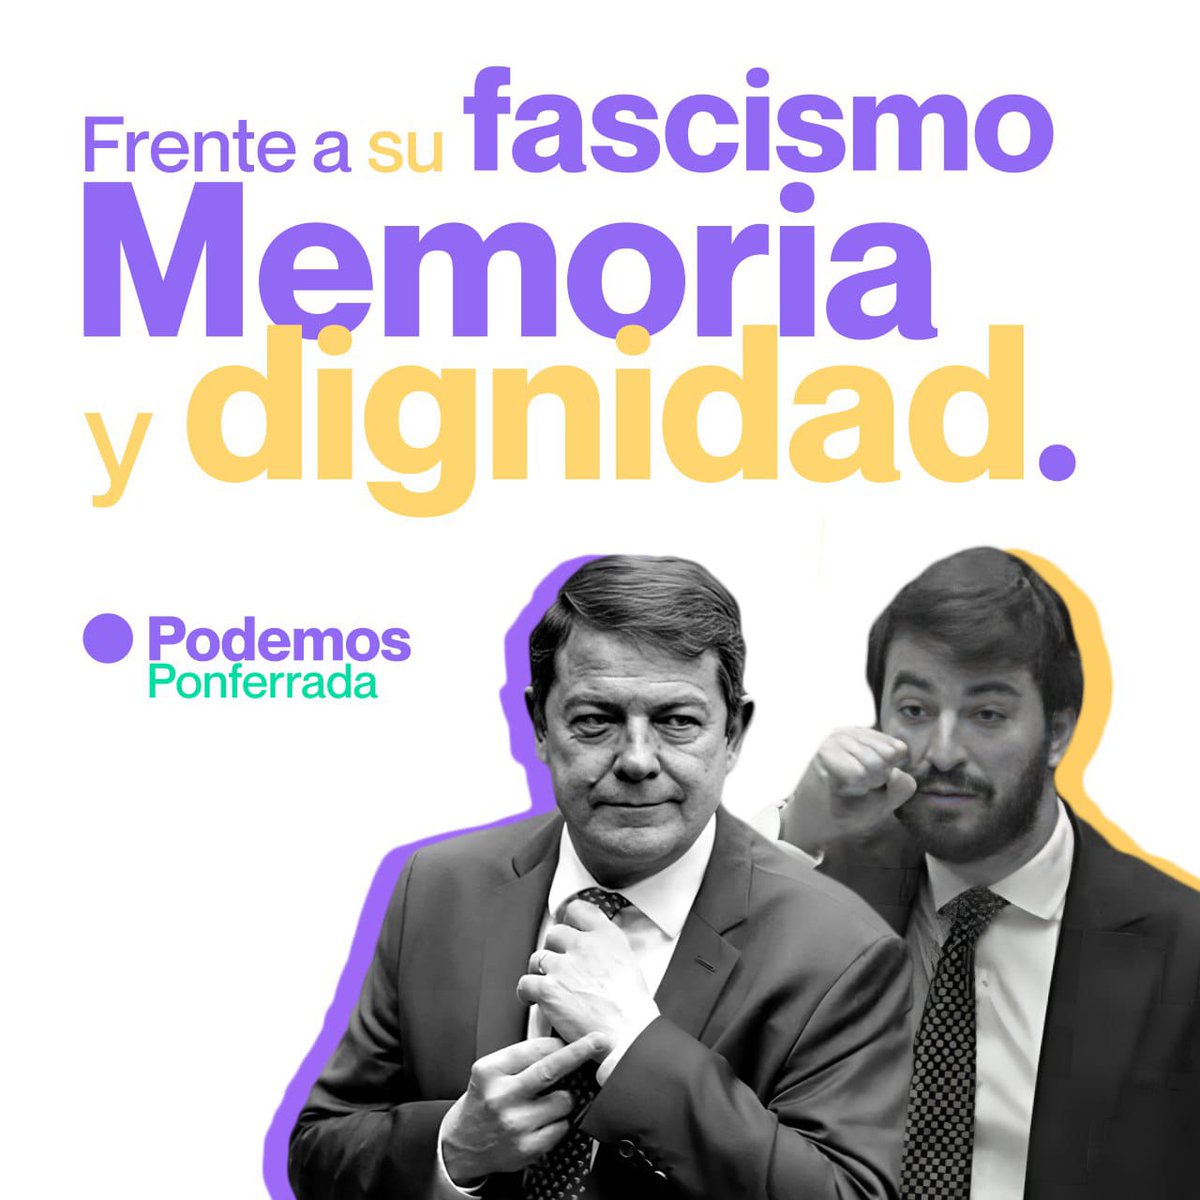 #Podemos #CastillayLeón  #LeydeConcordia #Memoriahistórica #Unidad #Lucha #Democracia #Libertad #Derechos #Asíeslavida #Paraquelavidasea #Ponferrada #Bierzo #PonfeMola #NoAlBlanqueoDelFranquismo